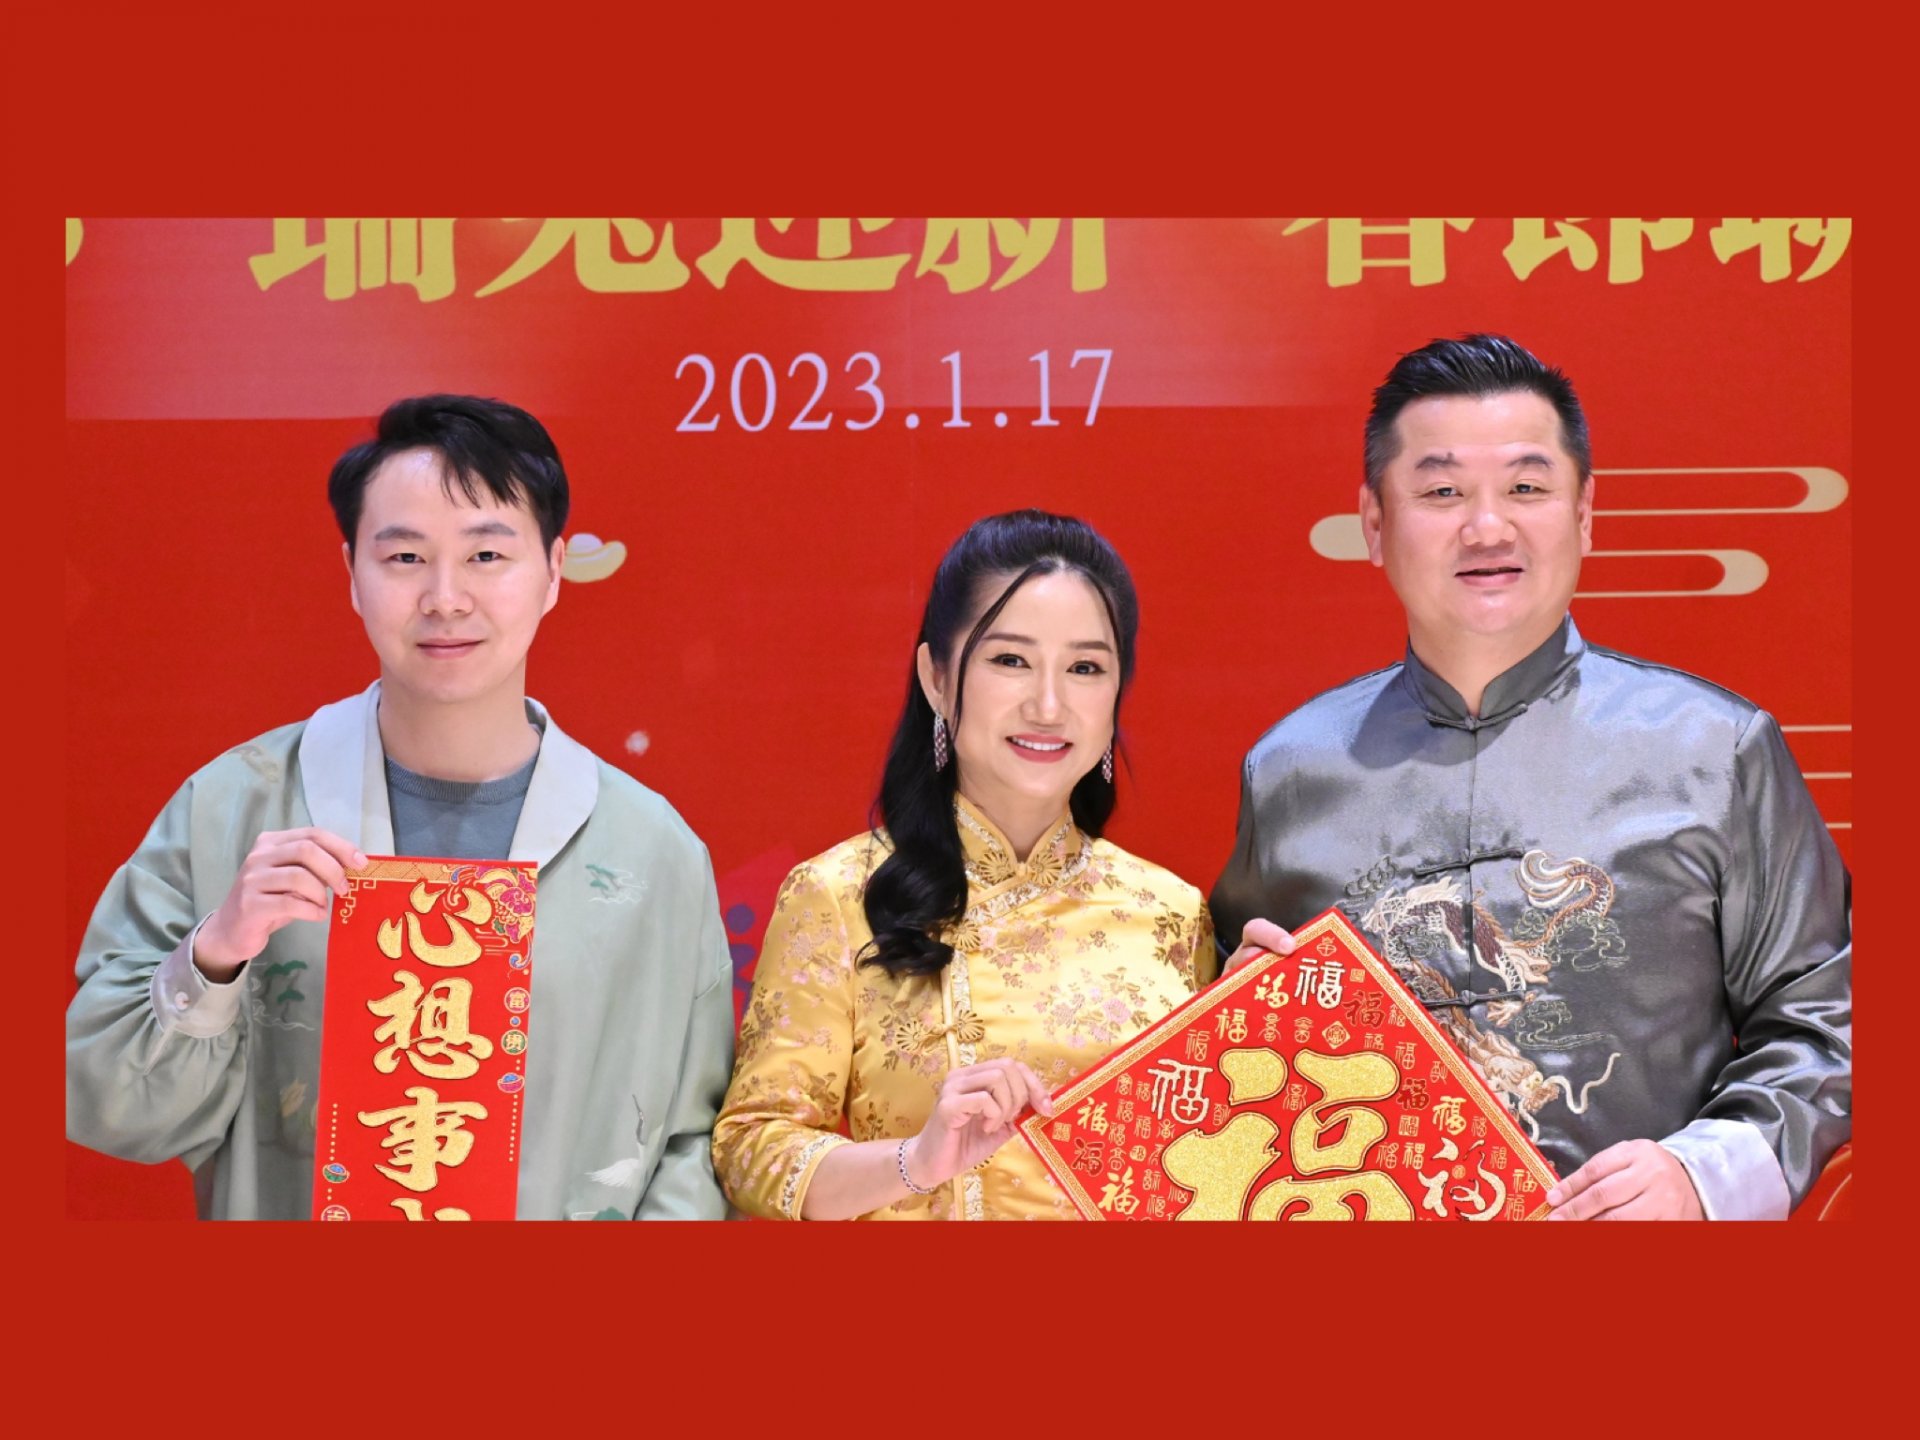 คุณจงมู่เยว่ (Zhong Muyue) รองประธานกรรมการบริหาร บริษัท ไทยเจียระไน กรุ๊ป จำกัด (มหาชน) ได้รับเชิญเข้าร่วมงานเลี้ยงฉลองเทศกาลตรุษจีน 2023 “ต้อนรับปีกระต่าย” ของสมาคมนักธุรกิจยุคใหม่ไทย-จีน